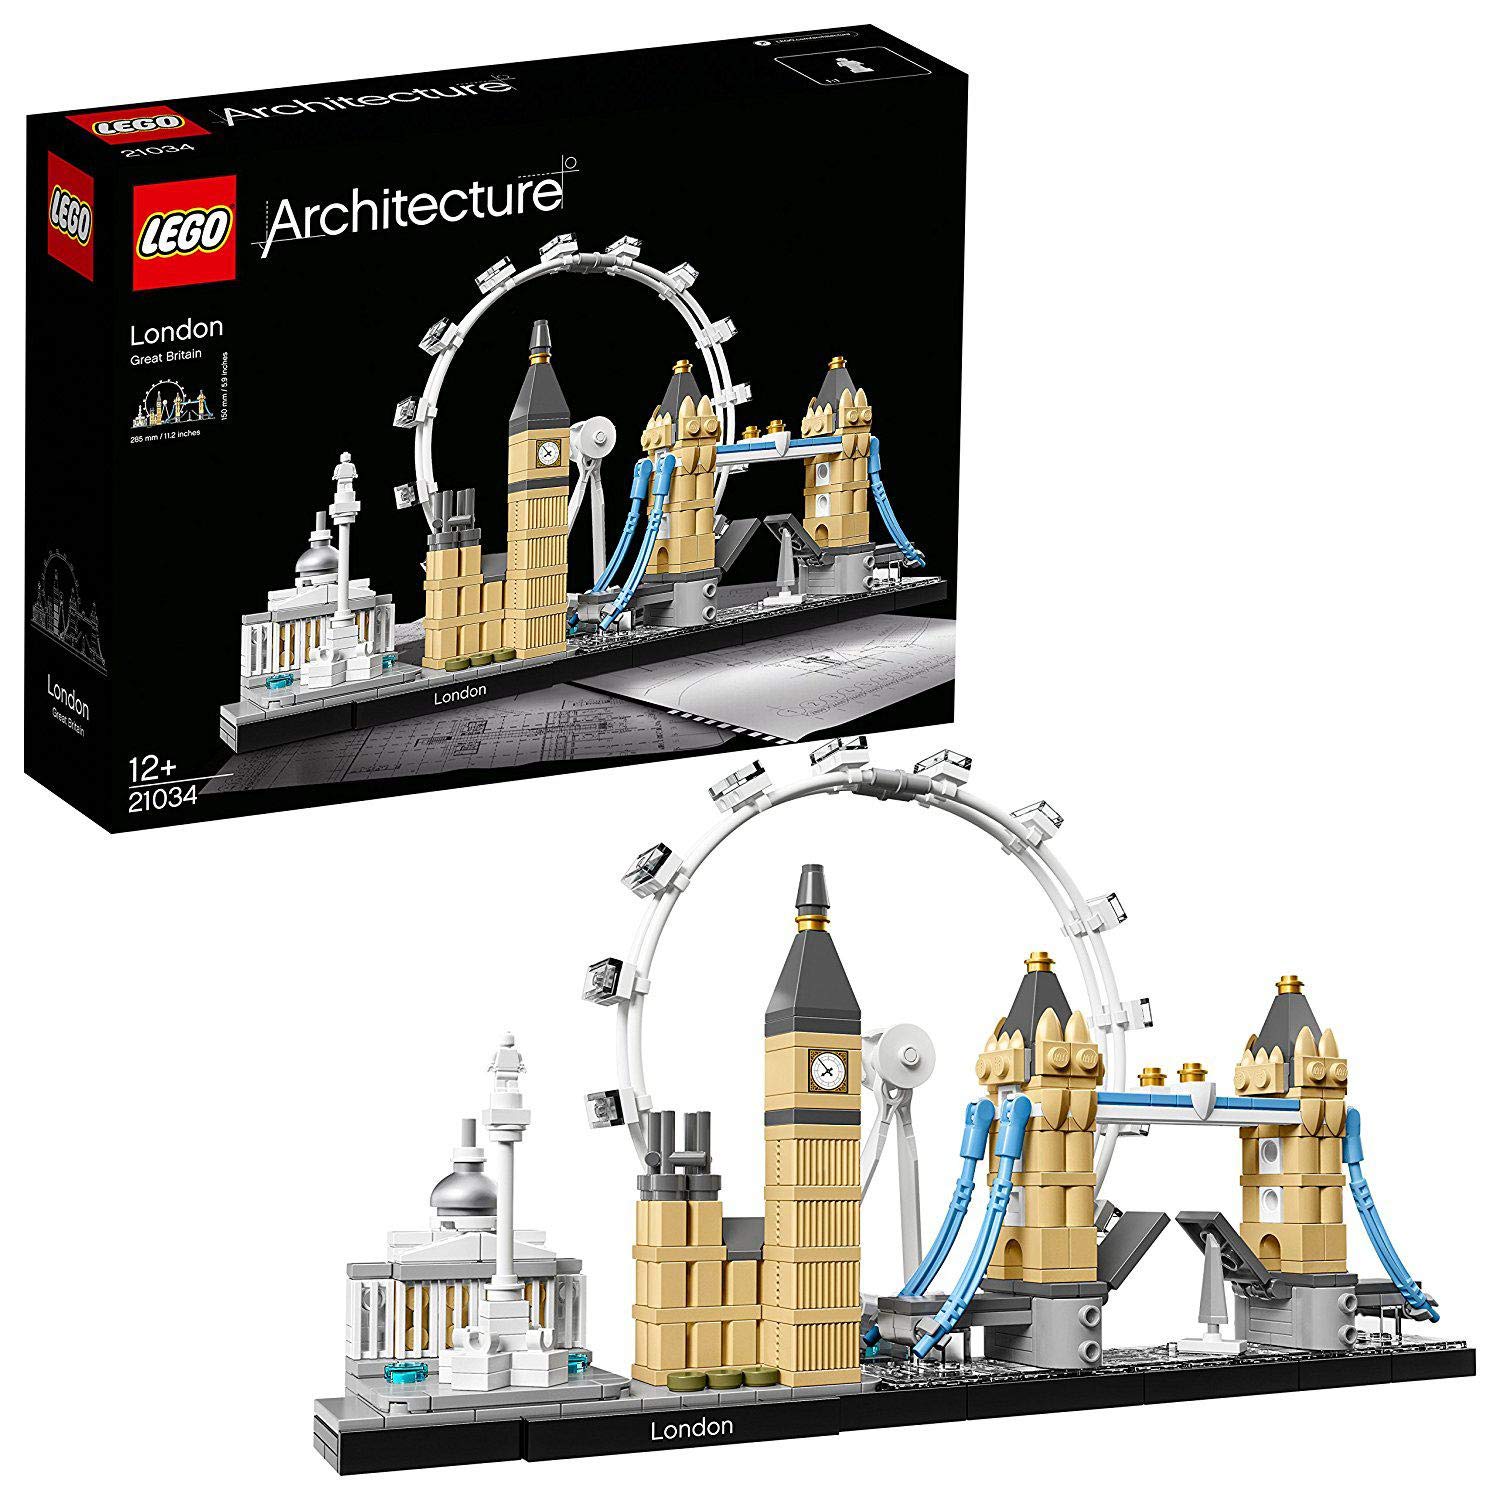 Best Verkopende bouwspeelgoed is dit prachtige model, dat de legendarische gebouwen van Londen, de National Gallery, de nelsonsaule, het London Eye, Big Ben 